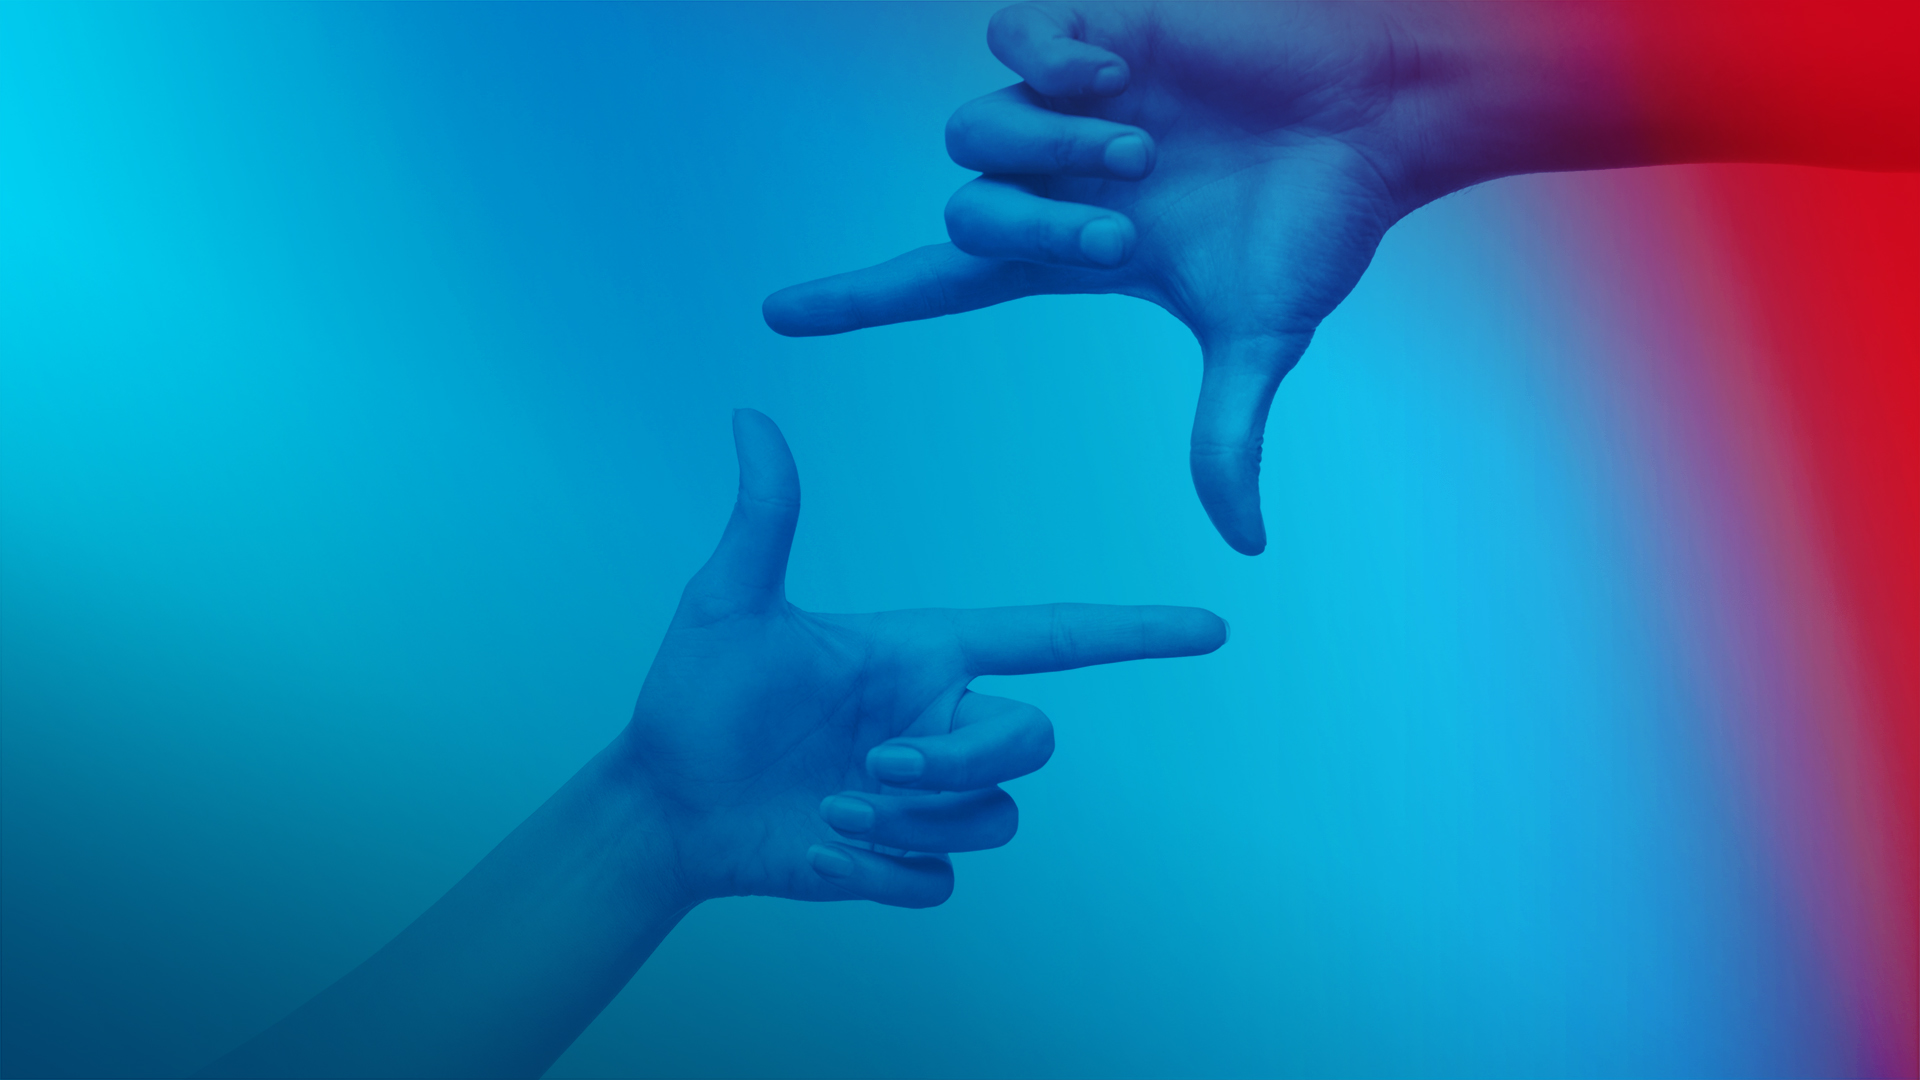 Dwie dłonie z kciukiem i palcem wskazującym tworzą symboliczny kwadrat.